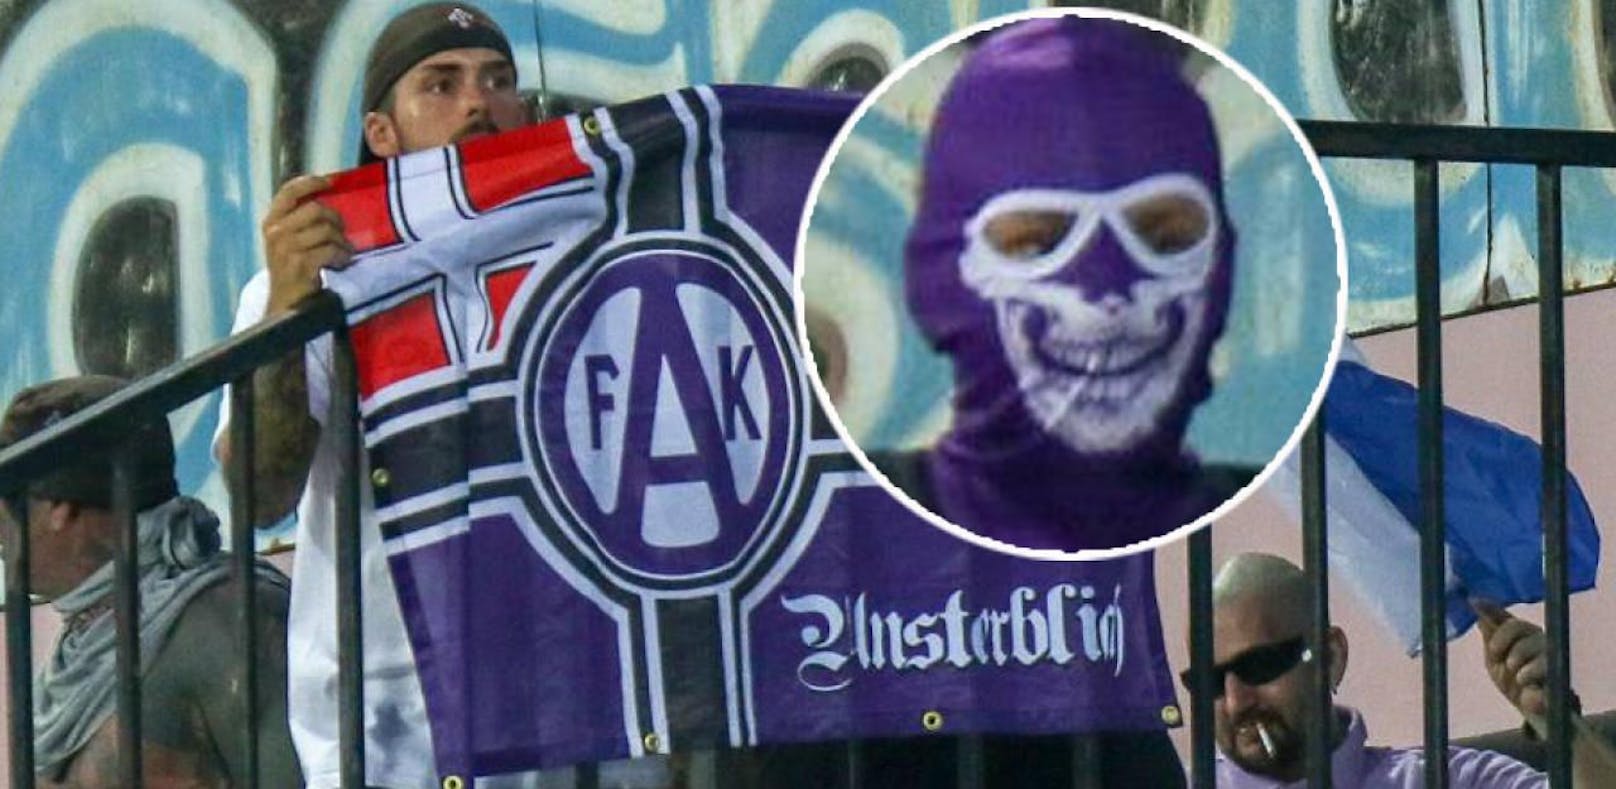 Unsterblich-Fans waren in Bratislava auf Krawall aus